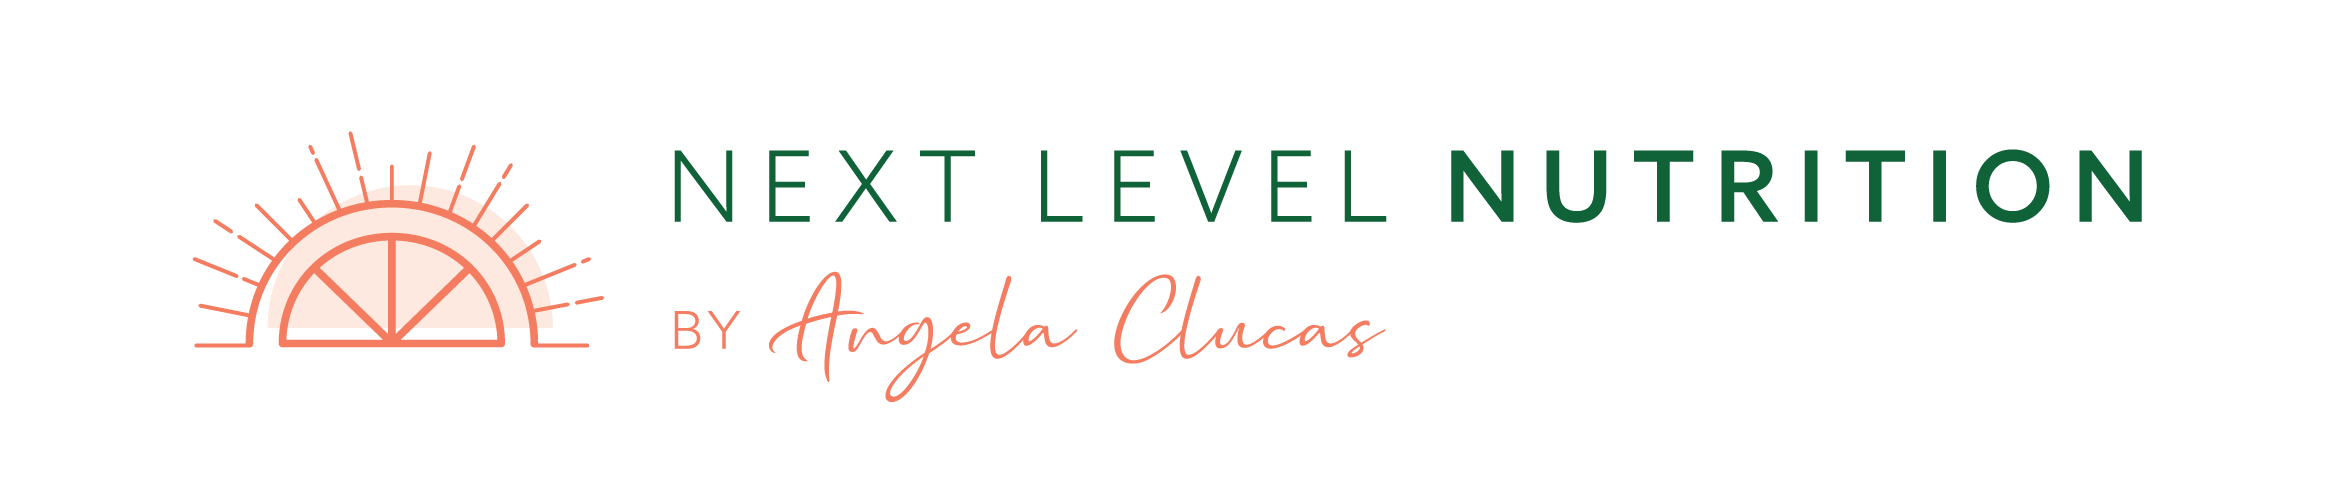 Next Level Nutrition logo with orange semi circle